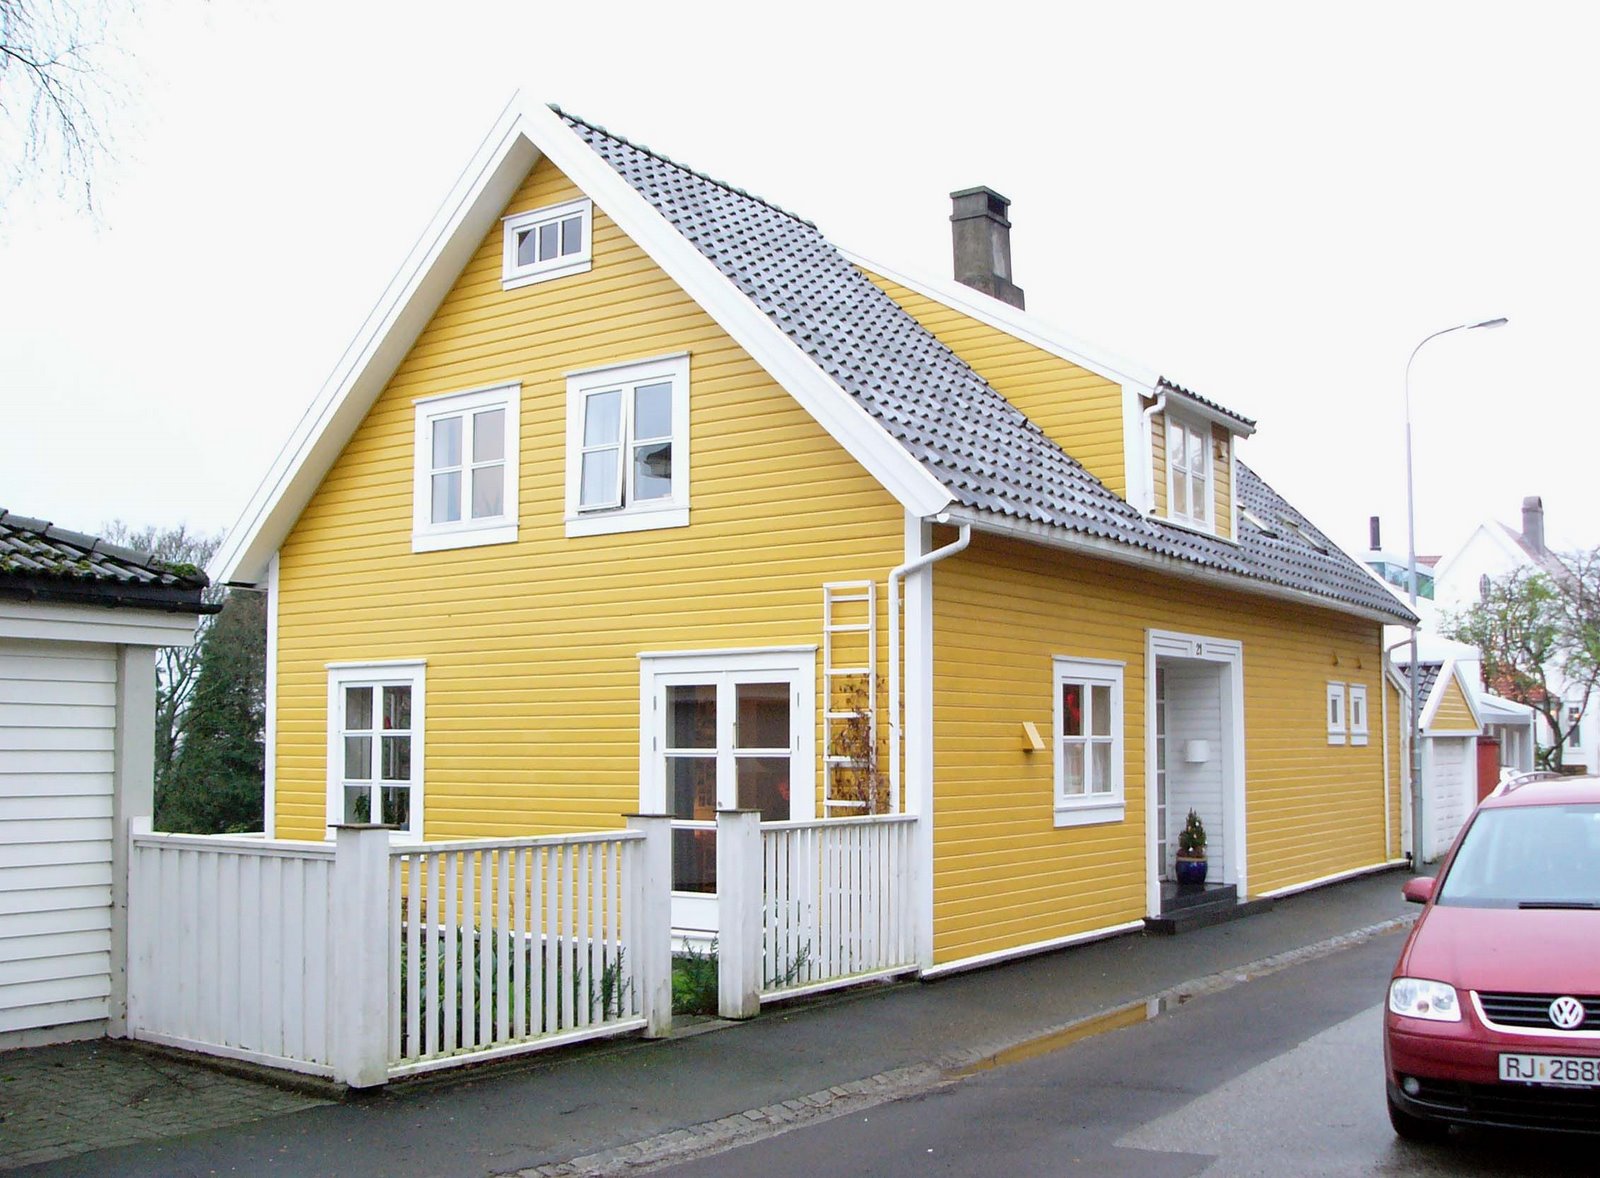 Yellow Homes thinking yellow